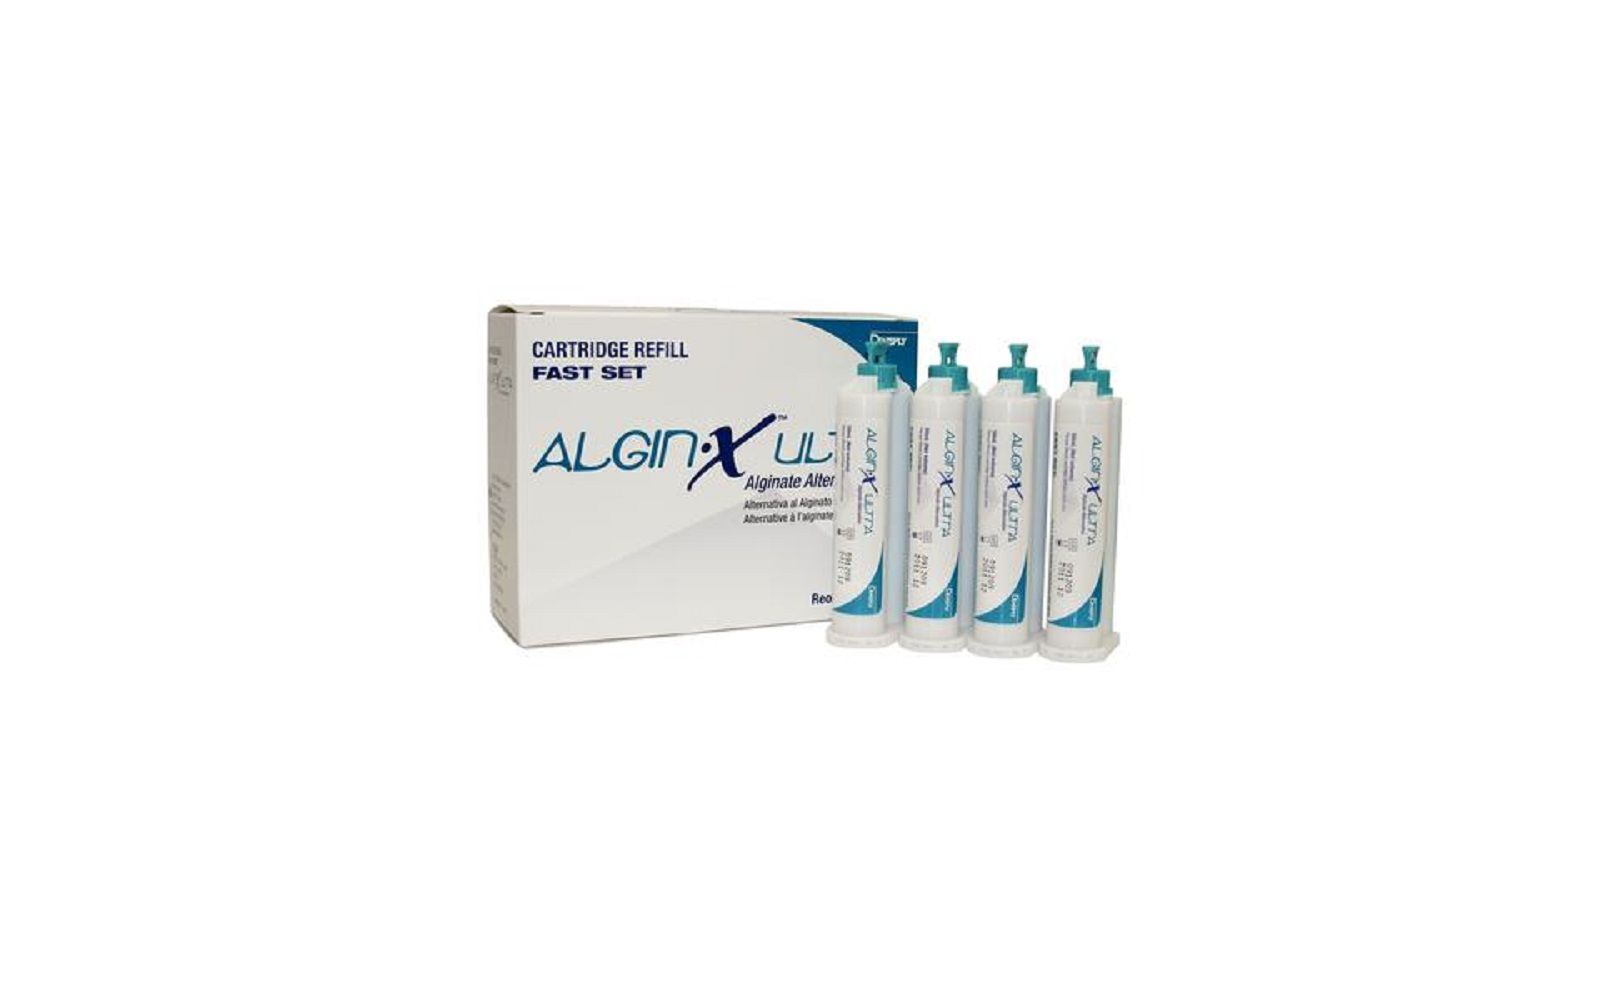 Algin•x™ ultra alginate alternative – 50 ml cartridge 4-pack refill, fast set